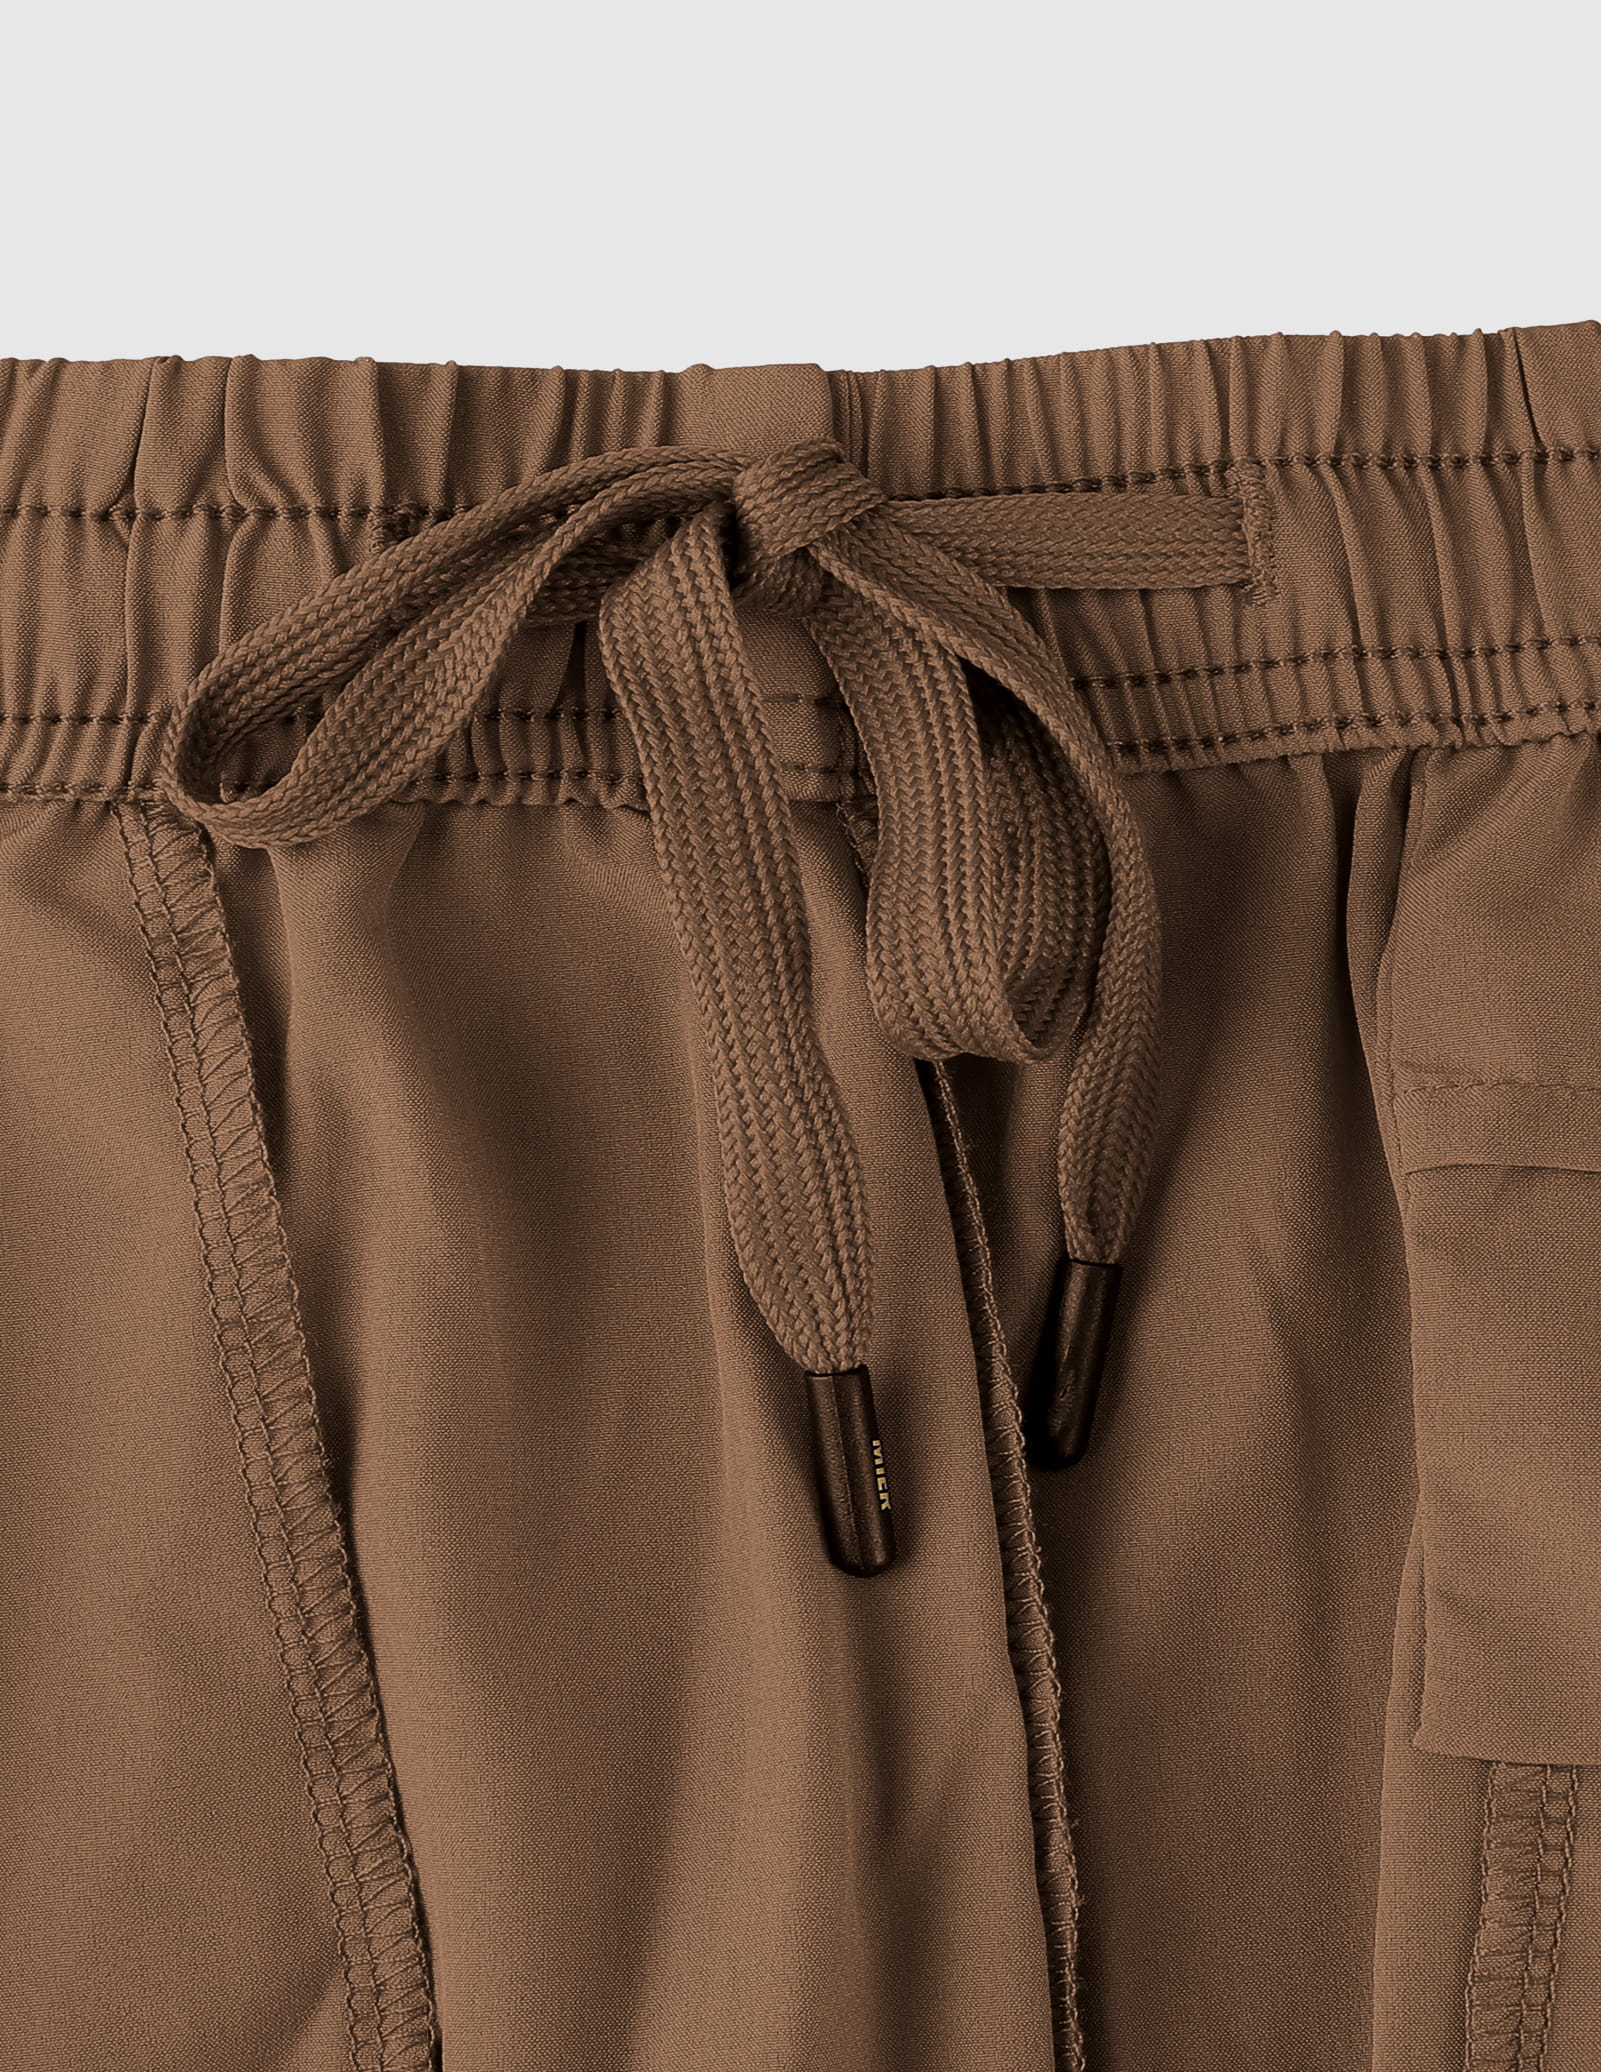 Trainingsshorts voor heren 5 inch actieve shorts met zakken